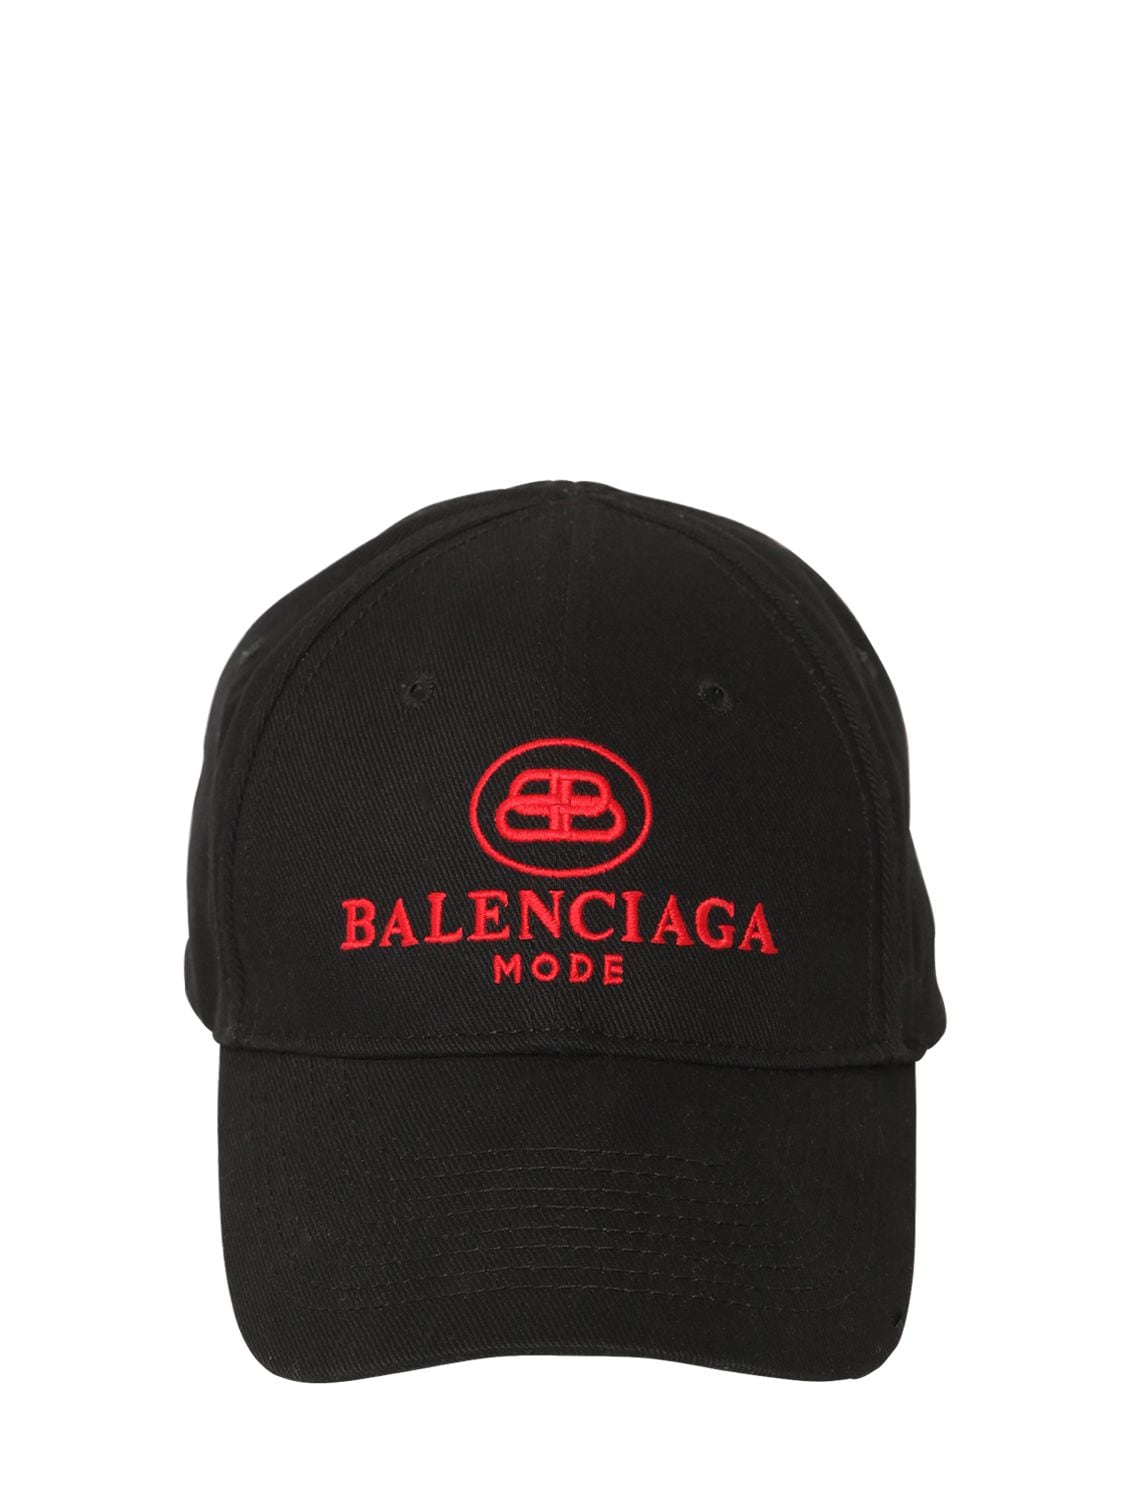 BALENCIAGA LOGO刺绣华达呢棒球帽,70IOFX011-MTA3NA2